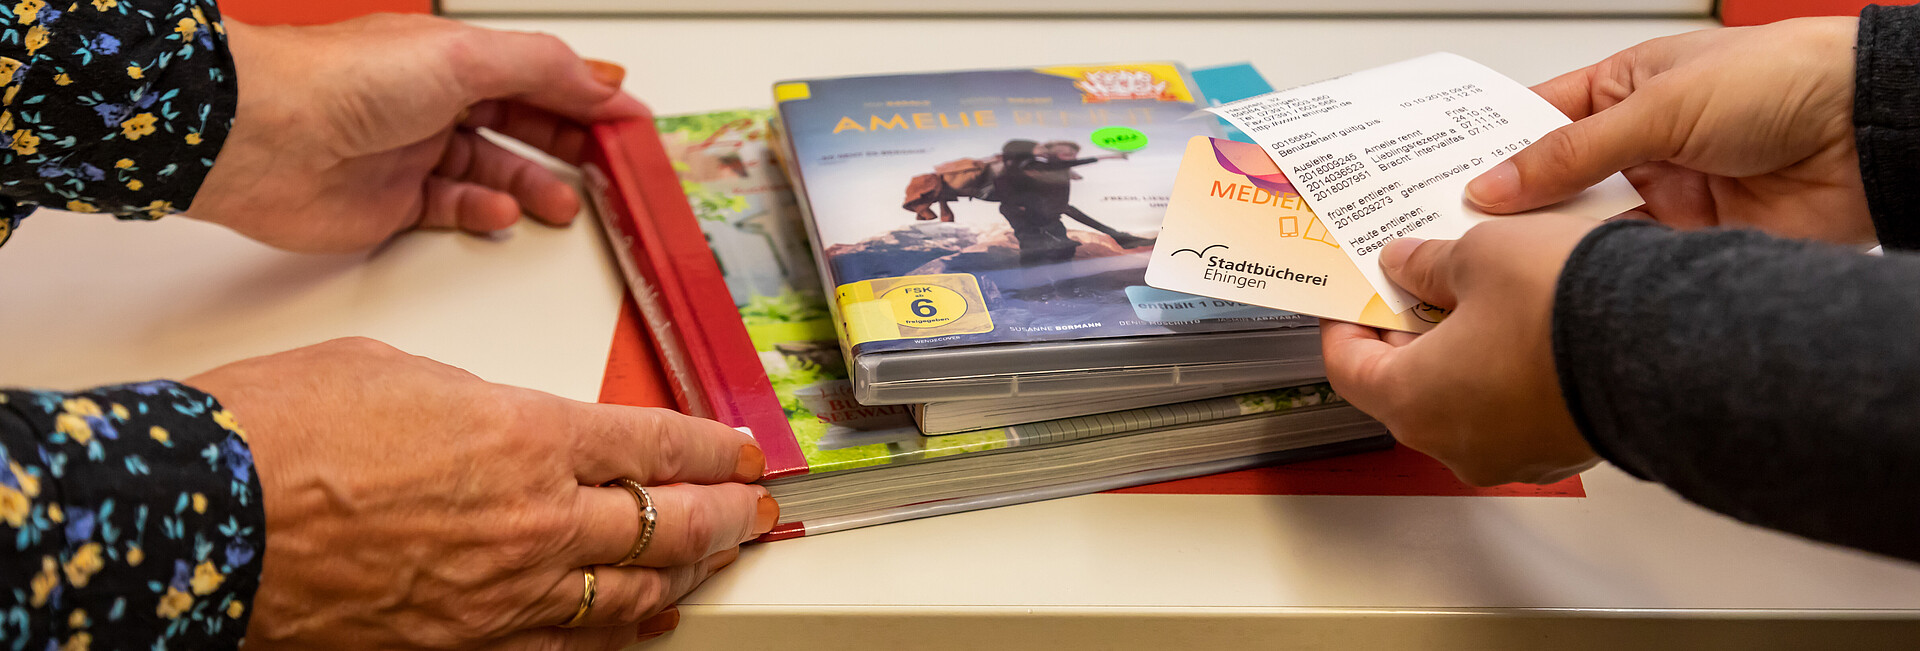 Vier Hände halten CDs und Bücher an den Selbstverbucher der Stadtbücherei Ehingen an der Donau 